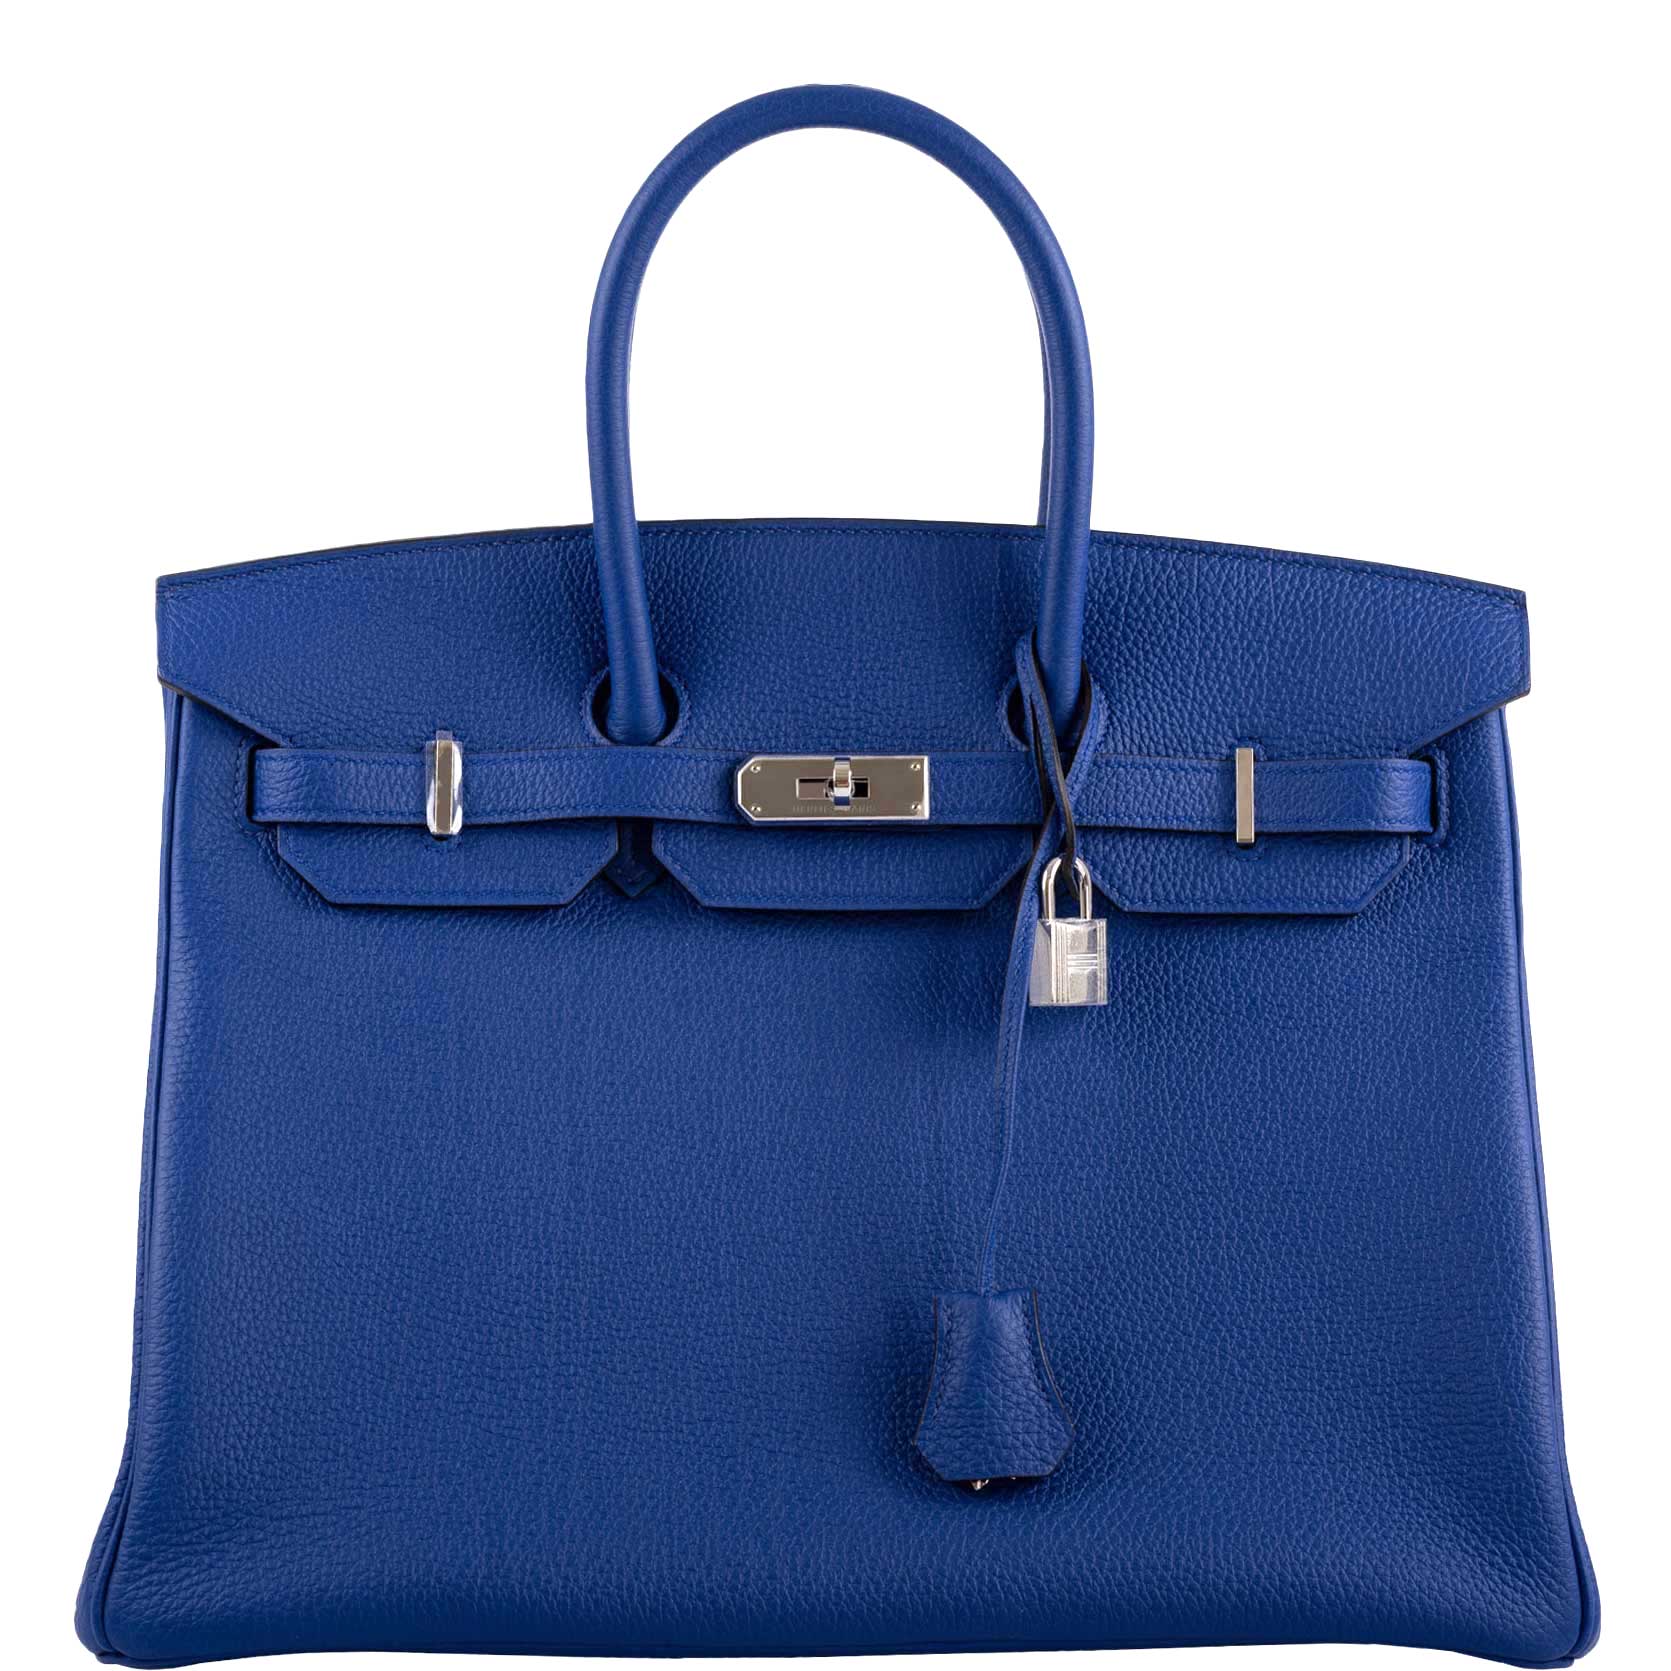 Hermès Birkin 35 Blue Electric Togo Palladium Hardware - 2015, T